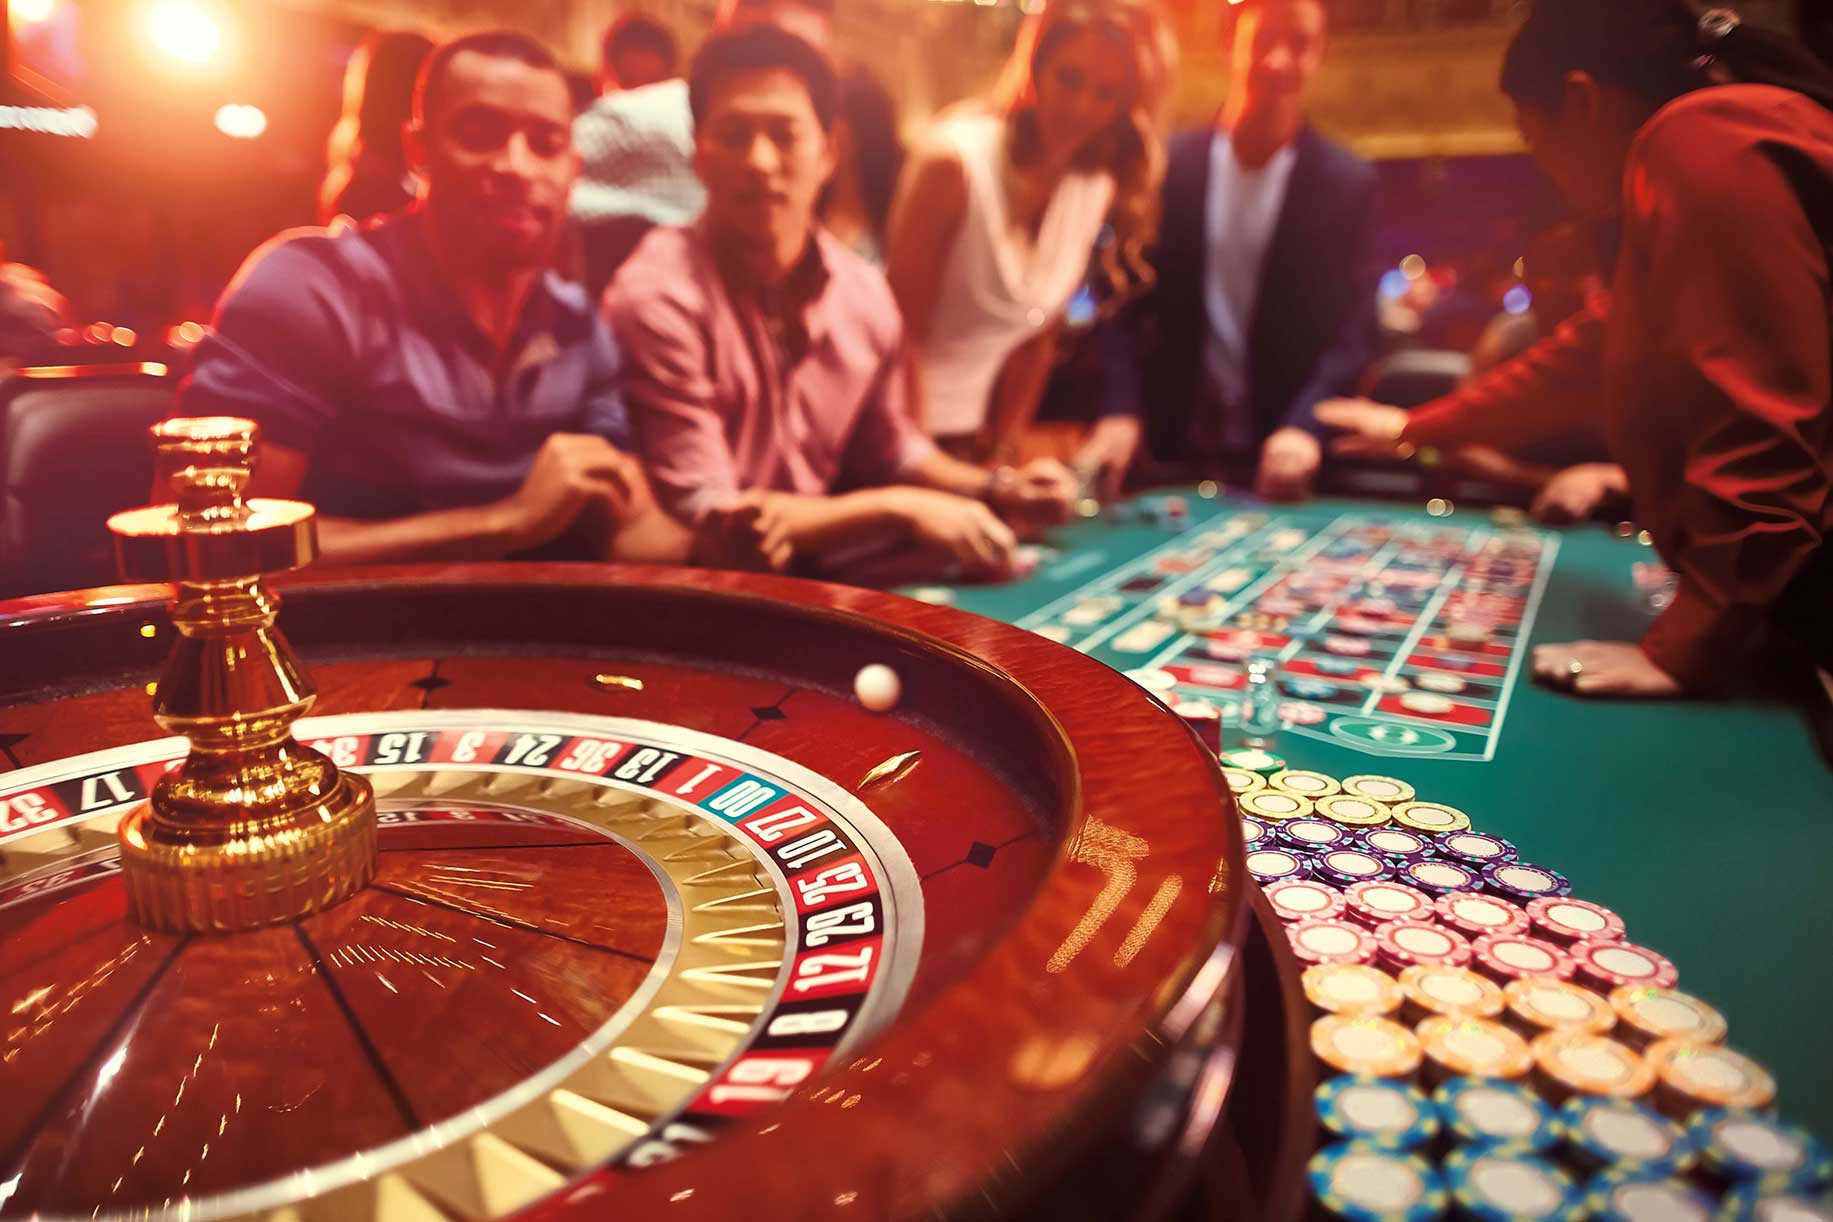 Kinh doanh casino: 'Không dễ xơi'